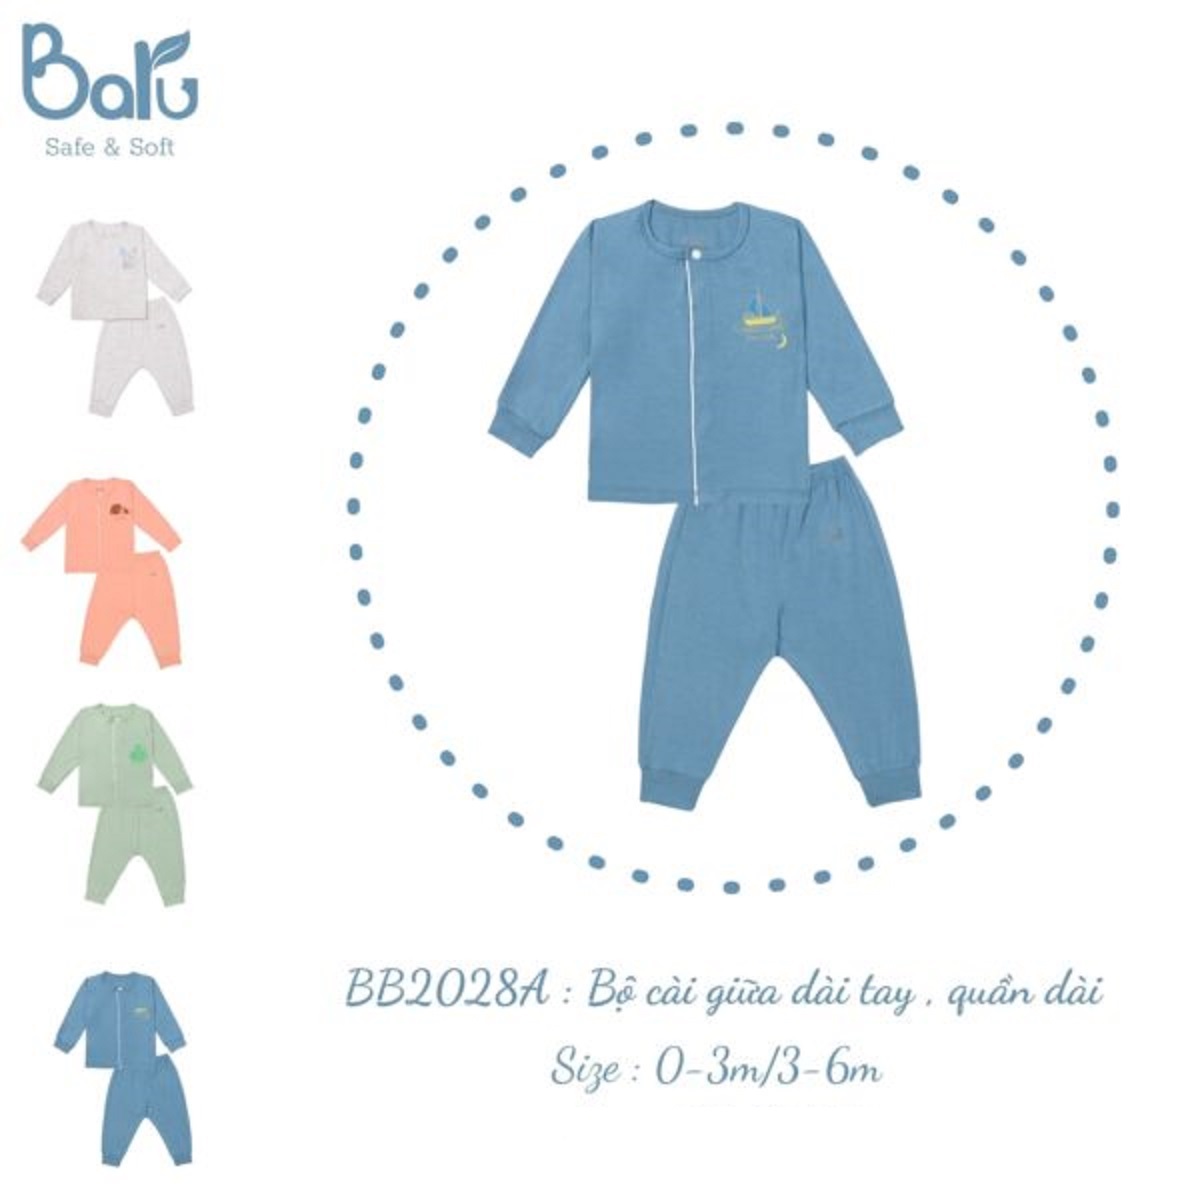 Bộ Cài giữa dài tay, quần dài cho bé, quần áo trẻ em, bộ bé sơ sinh B128